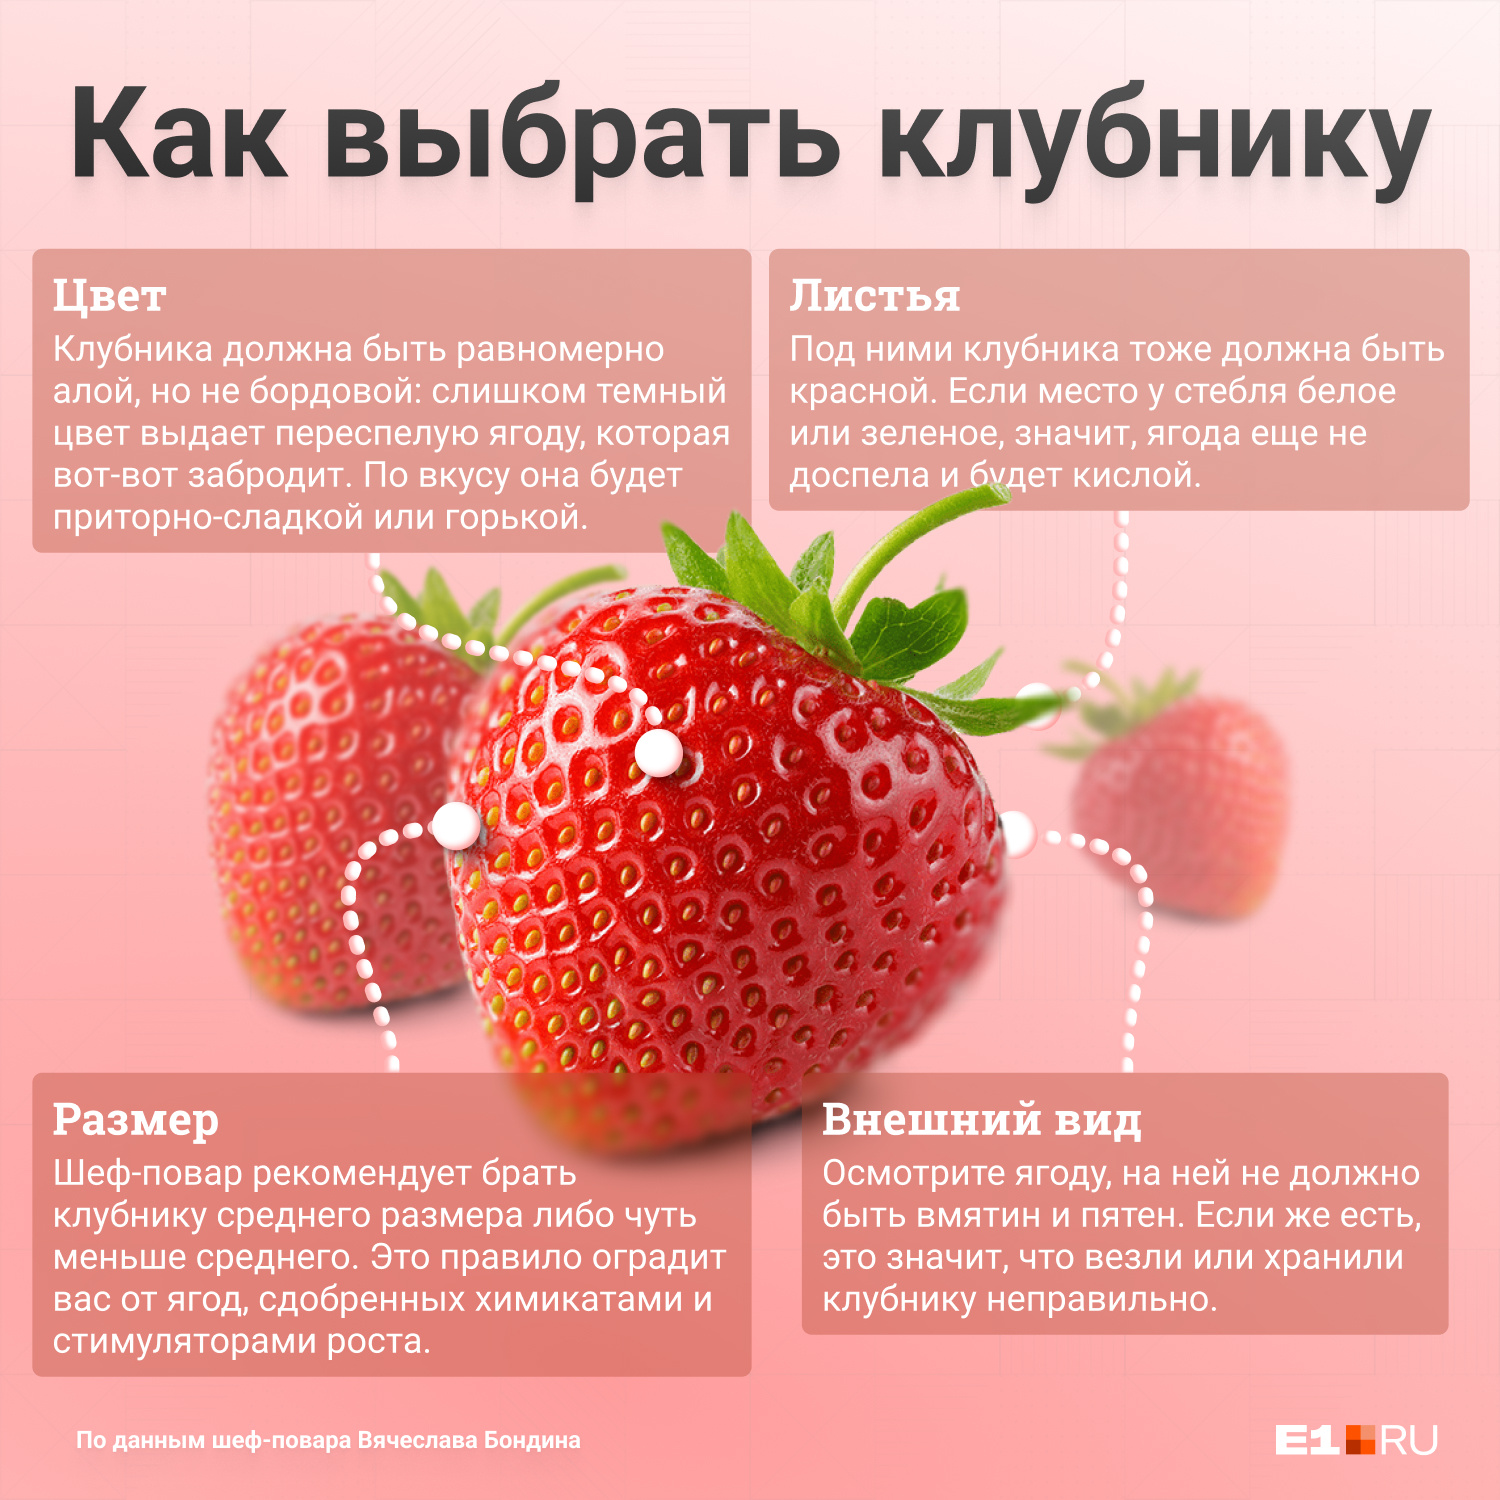 Важно осмотреть ягоды перед покупкой. Зрелость (и кислый вкус) можно определить по хвостику — под листьями не должно быть белого пятна